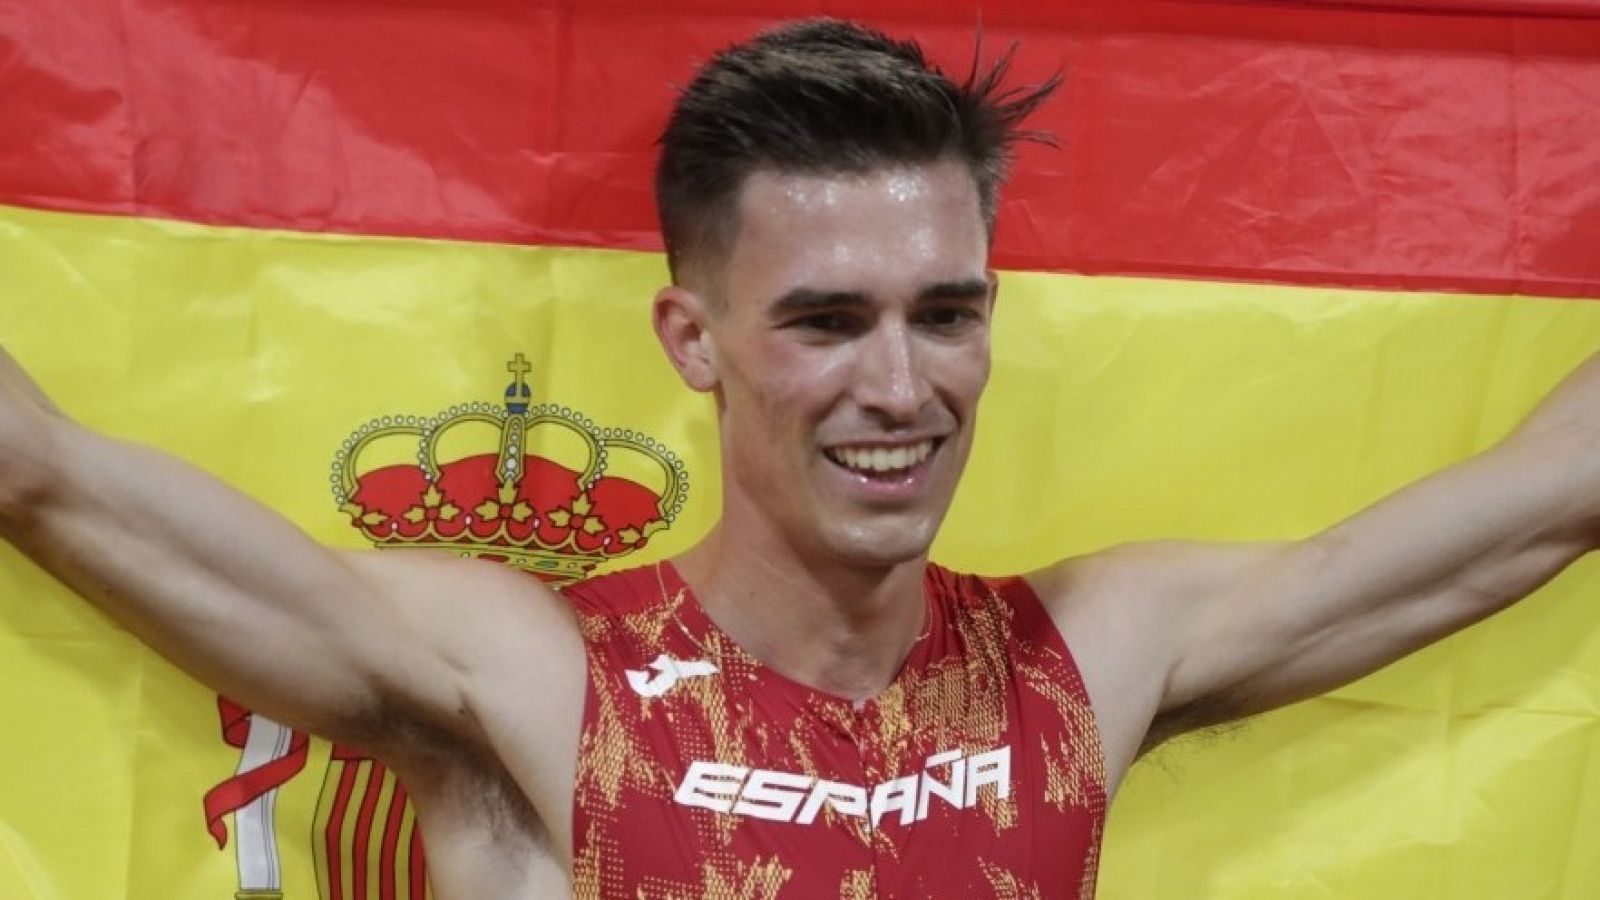 El español Mario García Romo ha logrado la medalla de bronce en la final de los 1.500 metros lisos de los Campeonatos Europeos que se están disputando en Múnich.